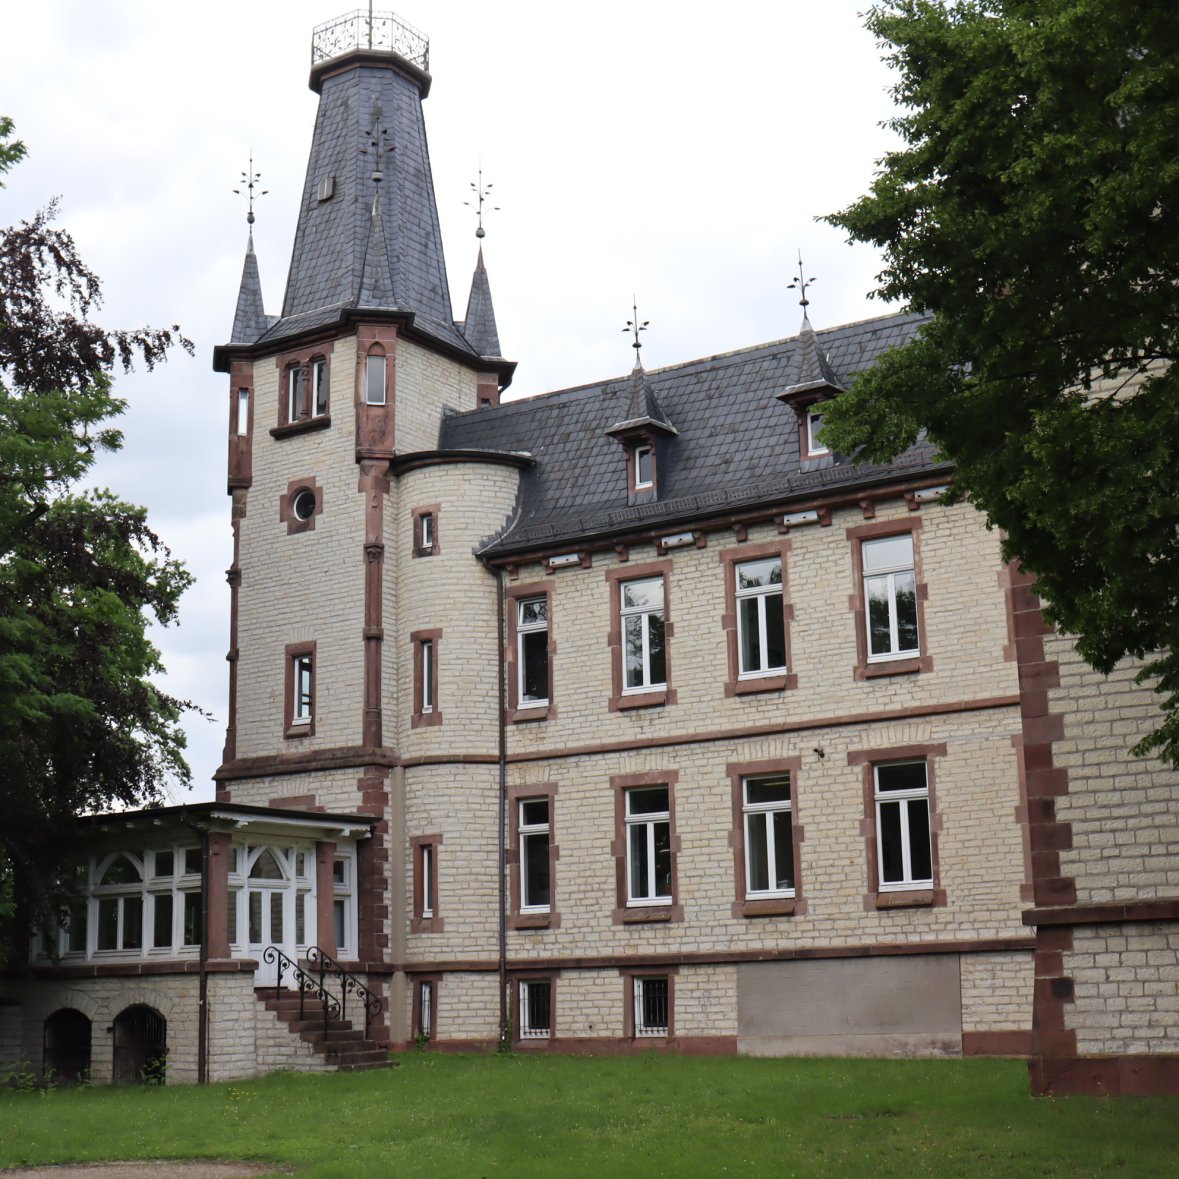 Tower of the Ständehaus